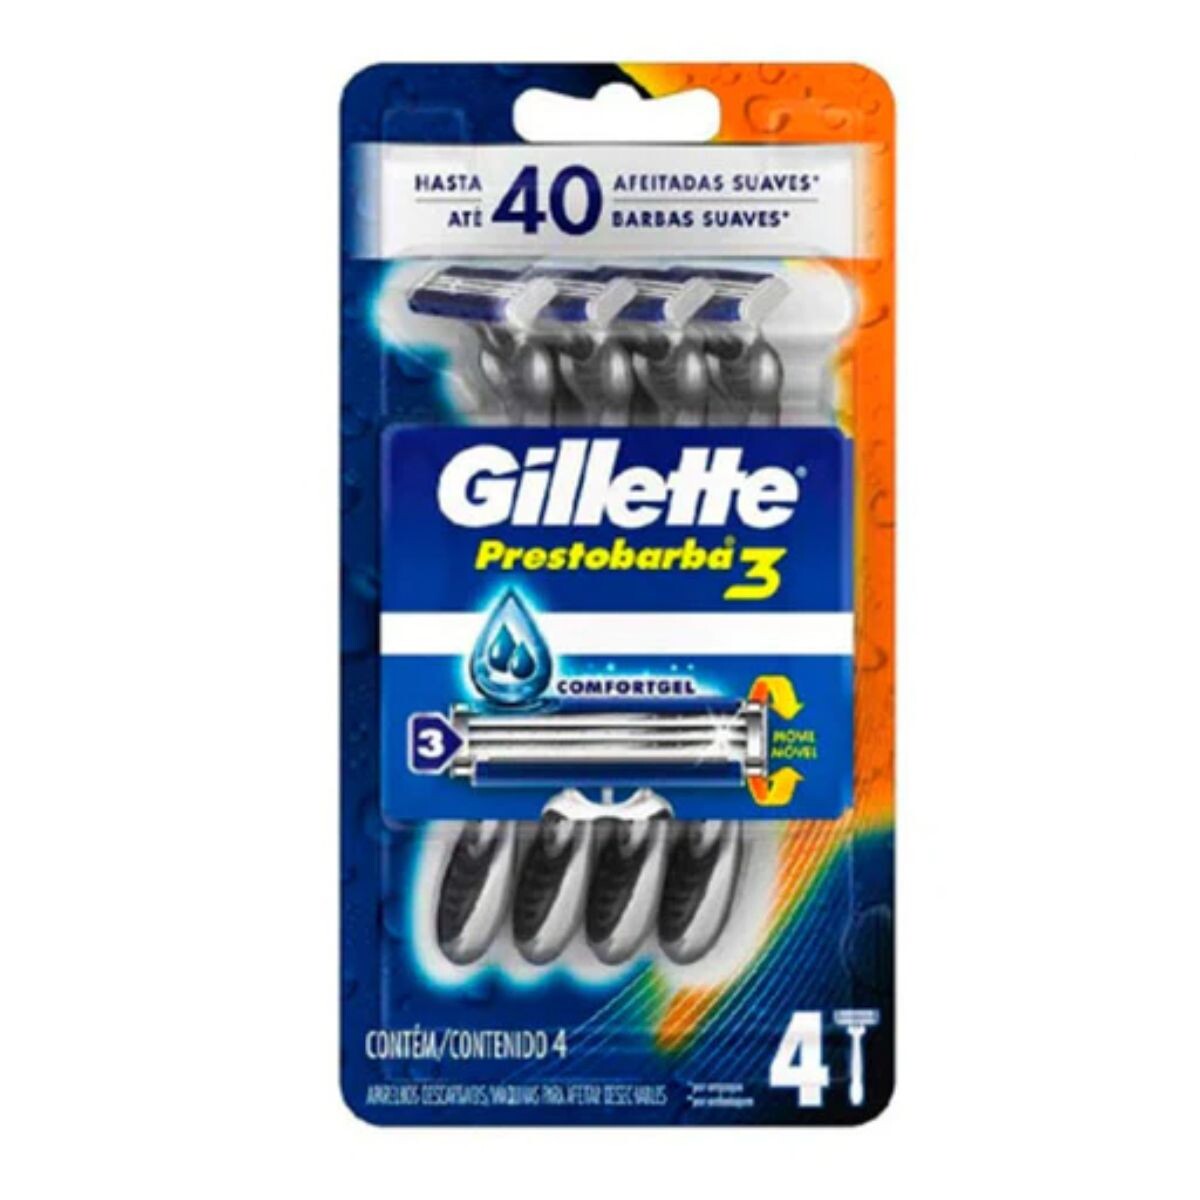 Afeitadora Desechable Gillette Prestobarba 3 Negra - X4 